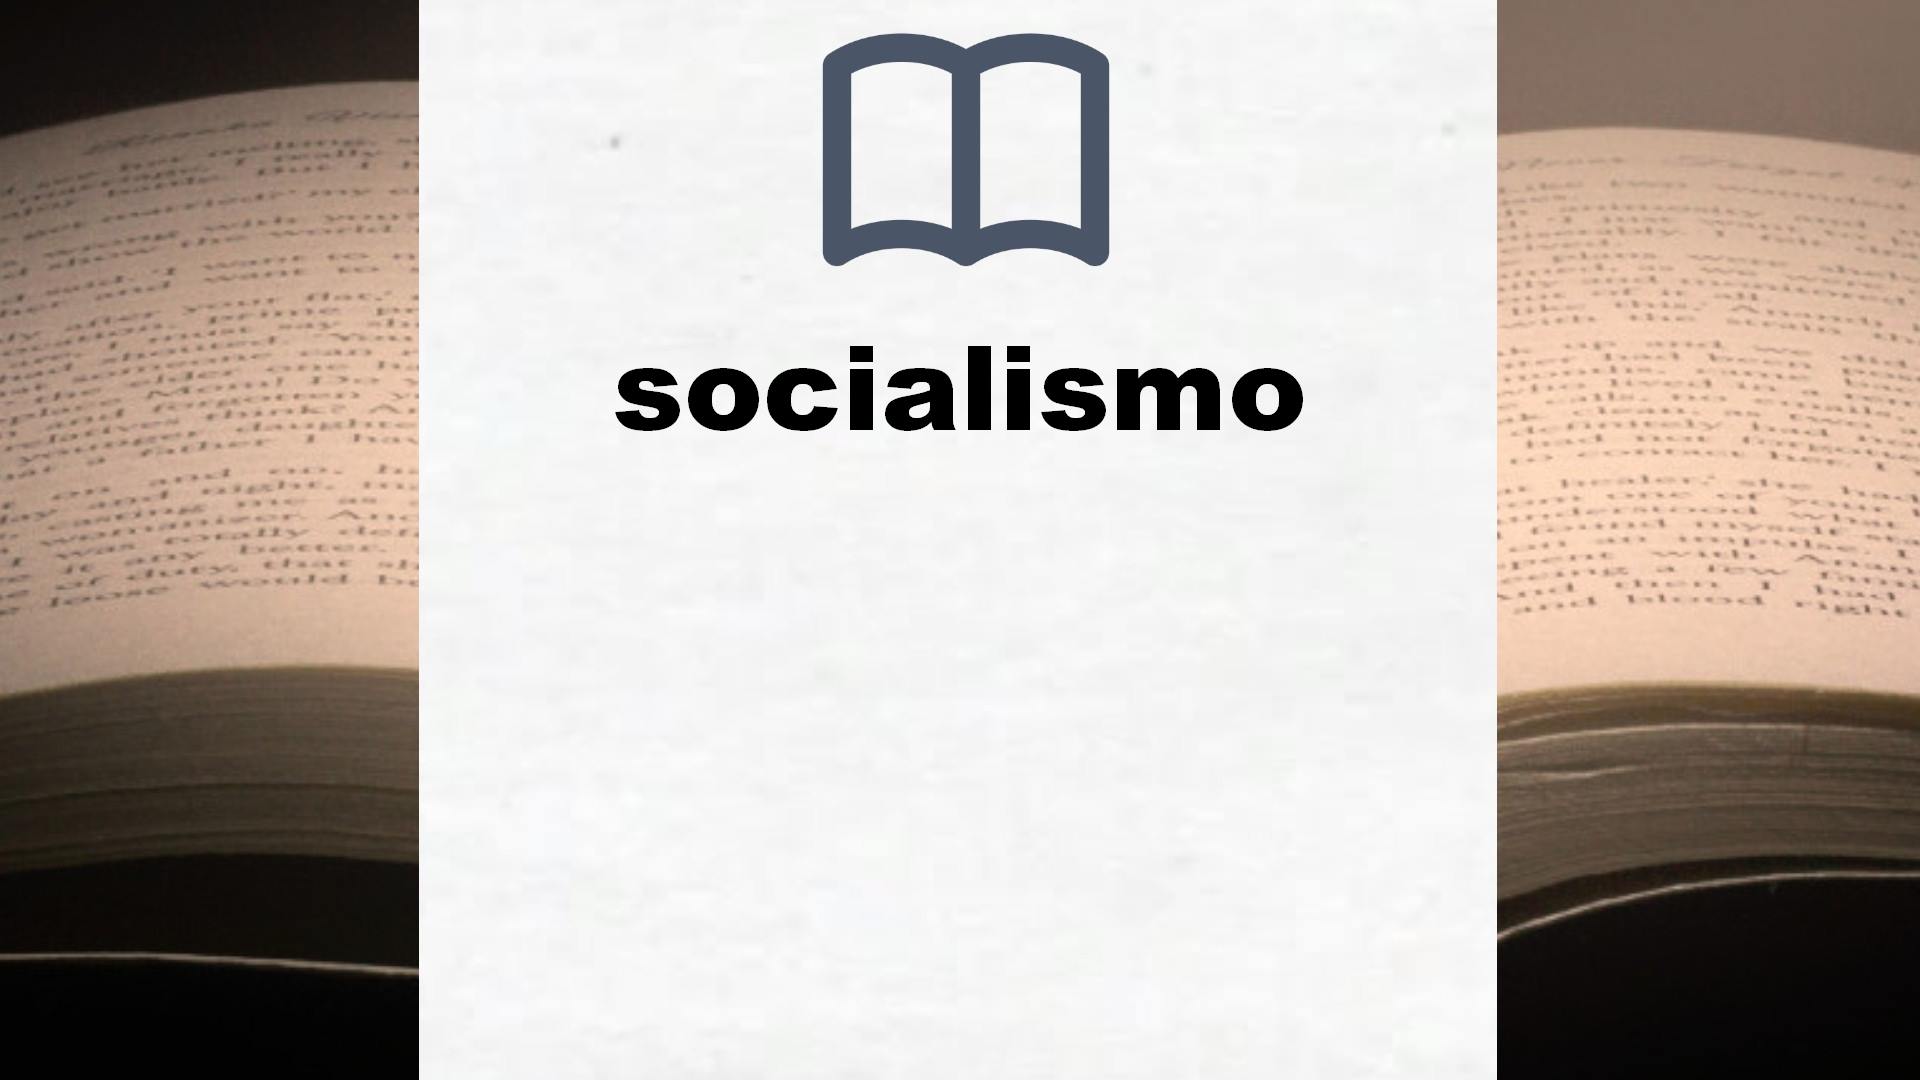 Libros sobre socialismo